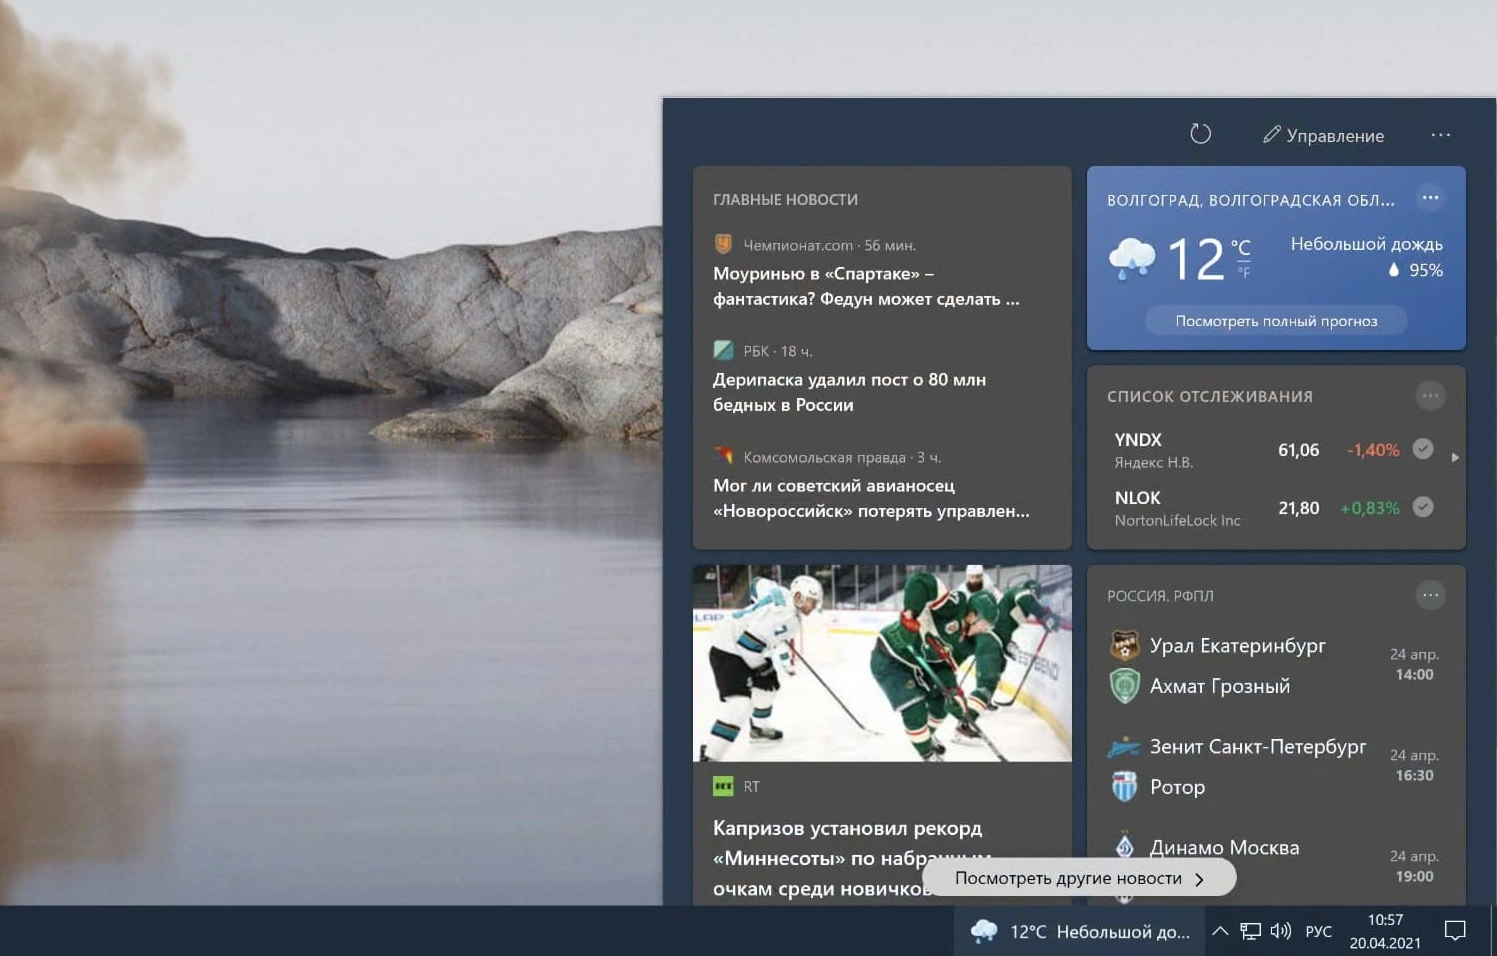 News & Interests-Widget für Windows 10 Insider in den Kanälen Beta und Release Preview